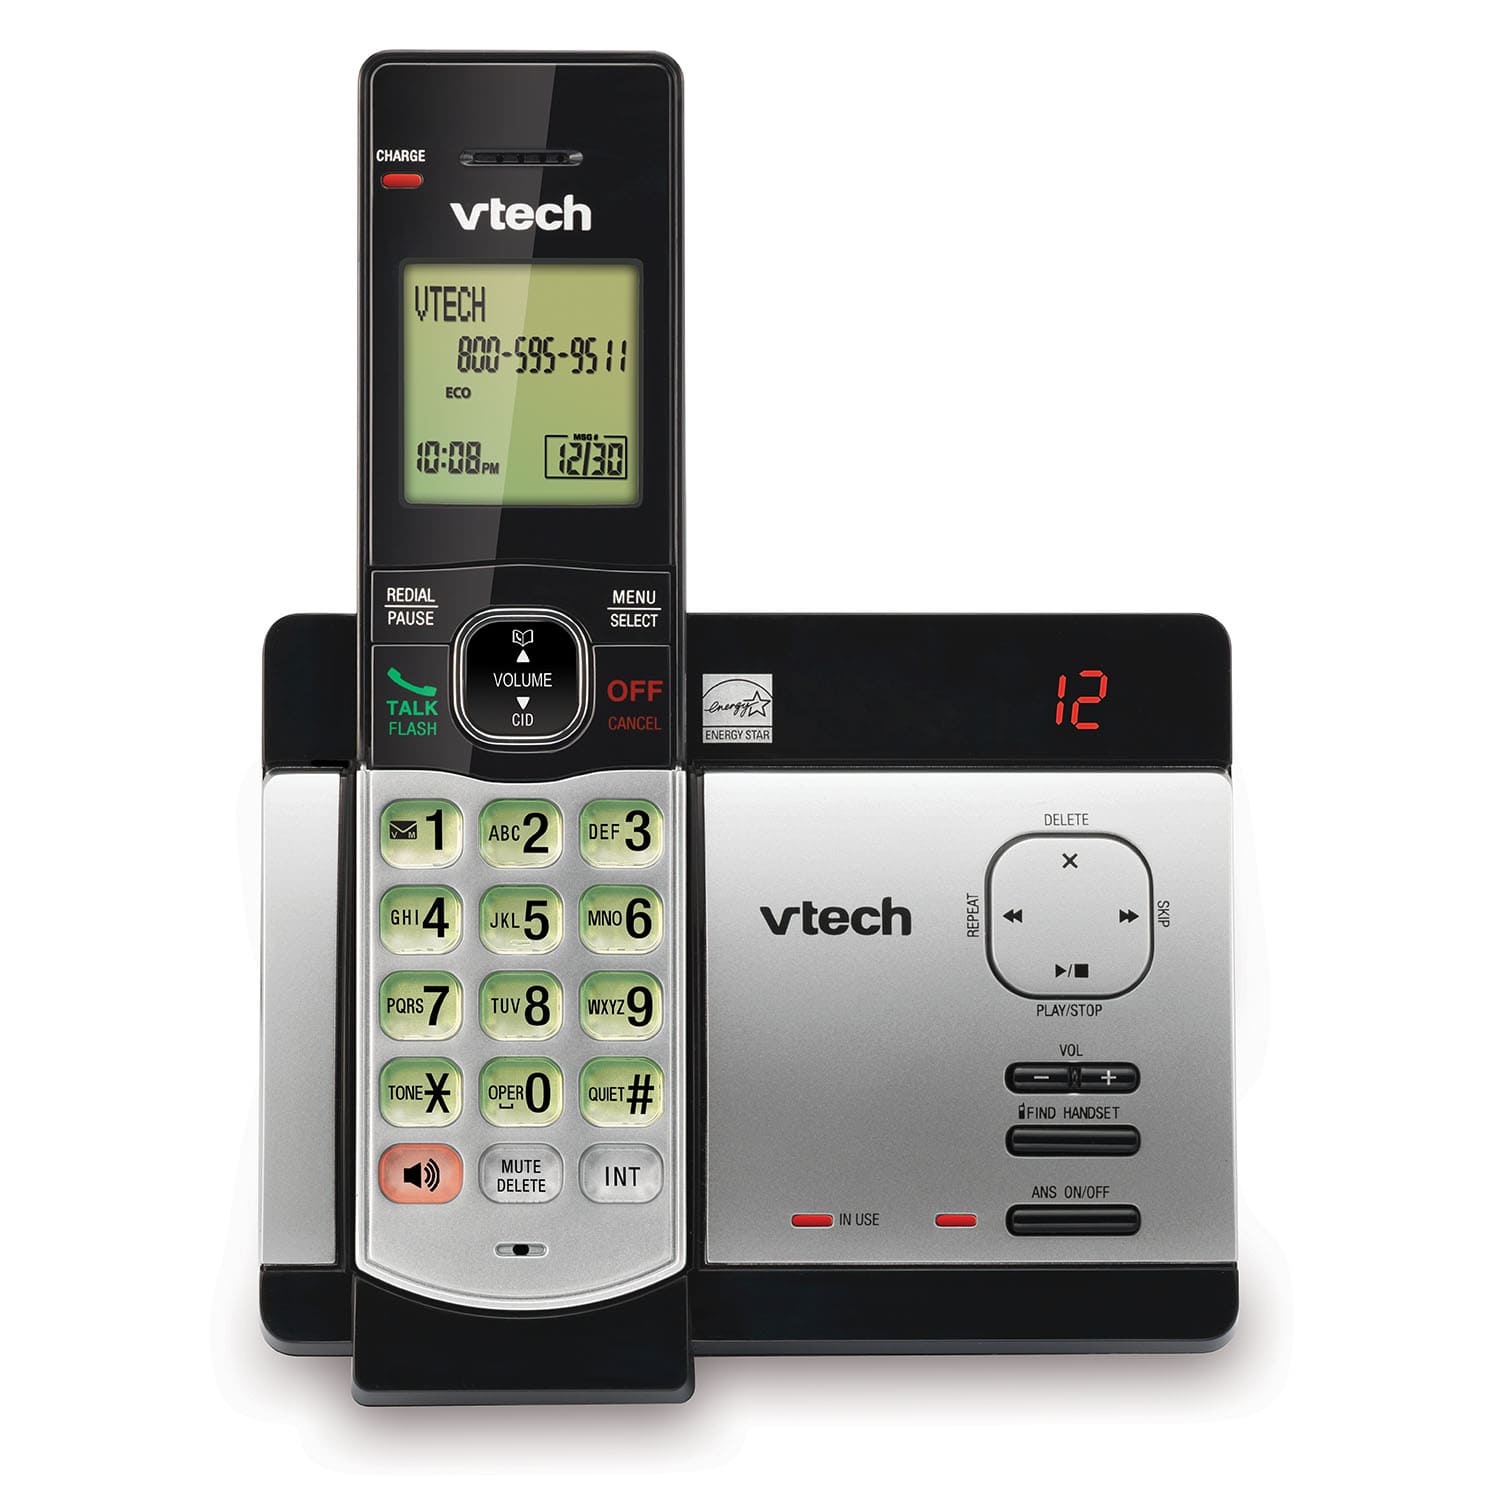 Systeme telephonique sans fil avec identification de l'appelant et appel en attente